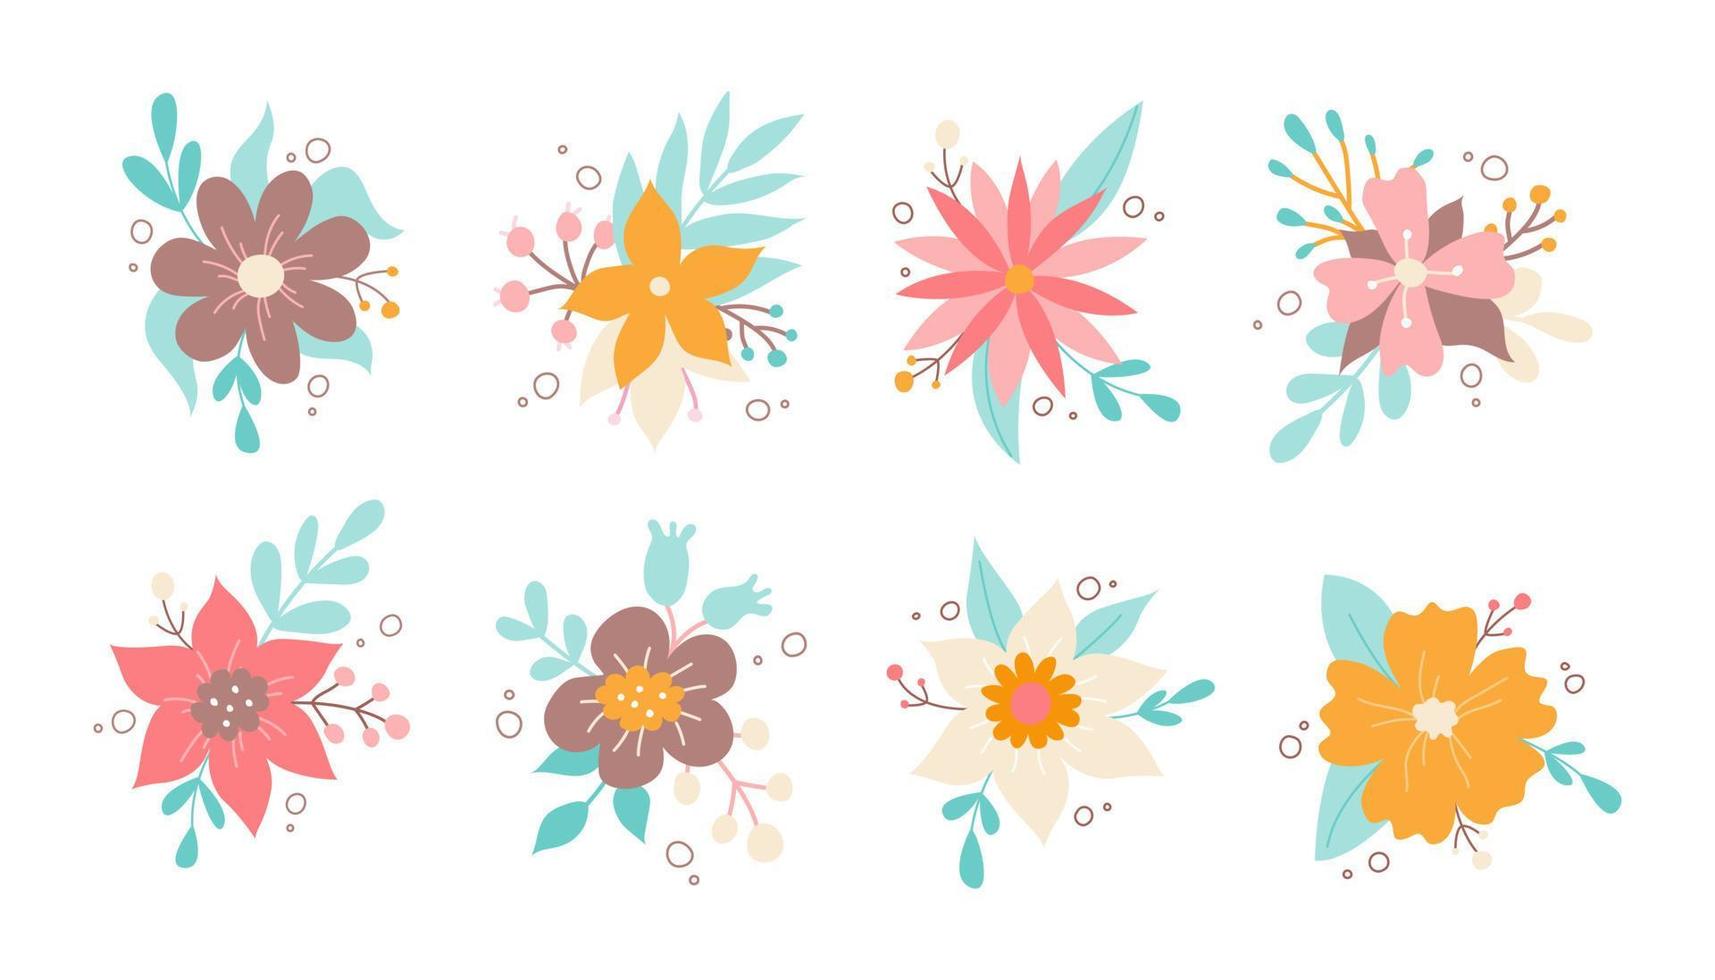 conjunto de elementos decorativos de diseño floral. flores de primavera y verano. Ilustración de vector plano colorido